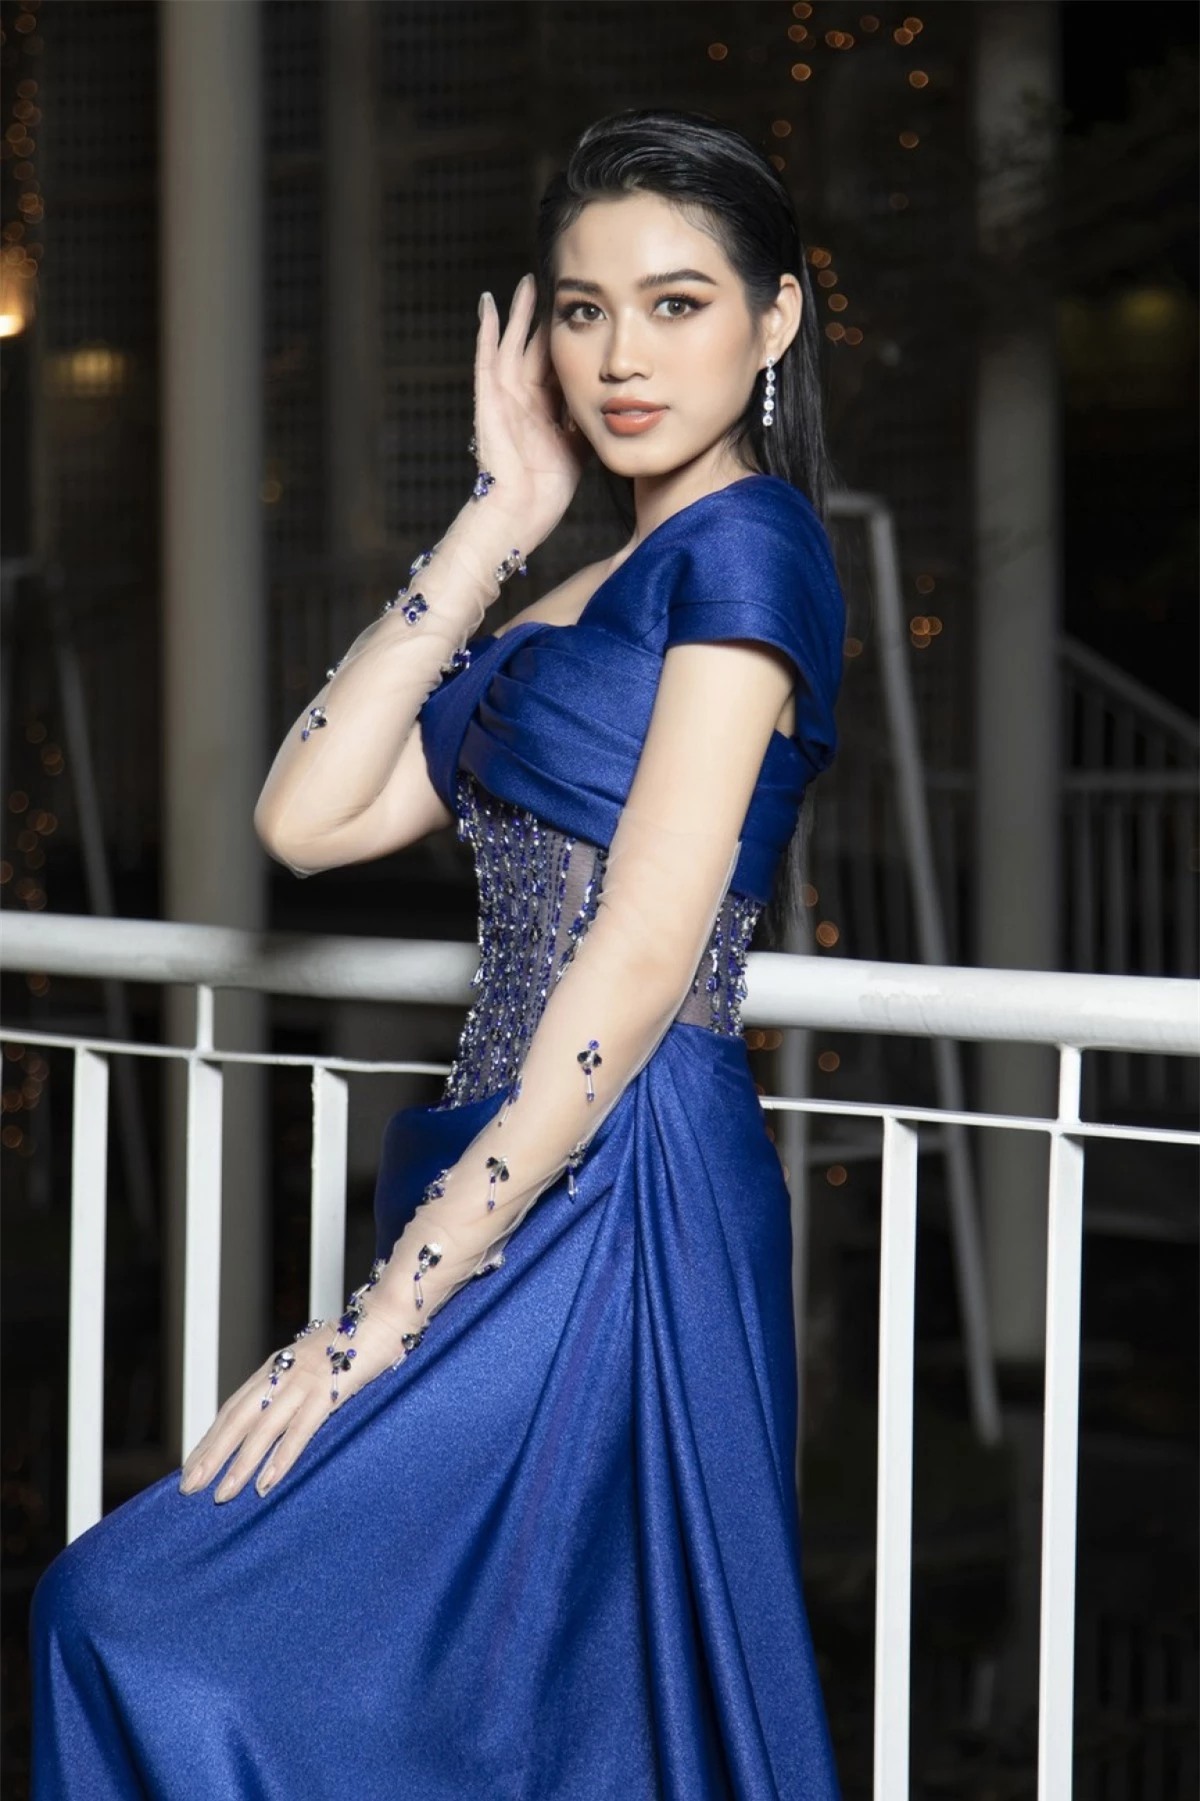 Với tạo hình cầu kỳ và xinh đẹp, lần này Hoa hậu Đỗ Hà nhận được nhiều lời khen ngợi.